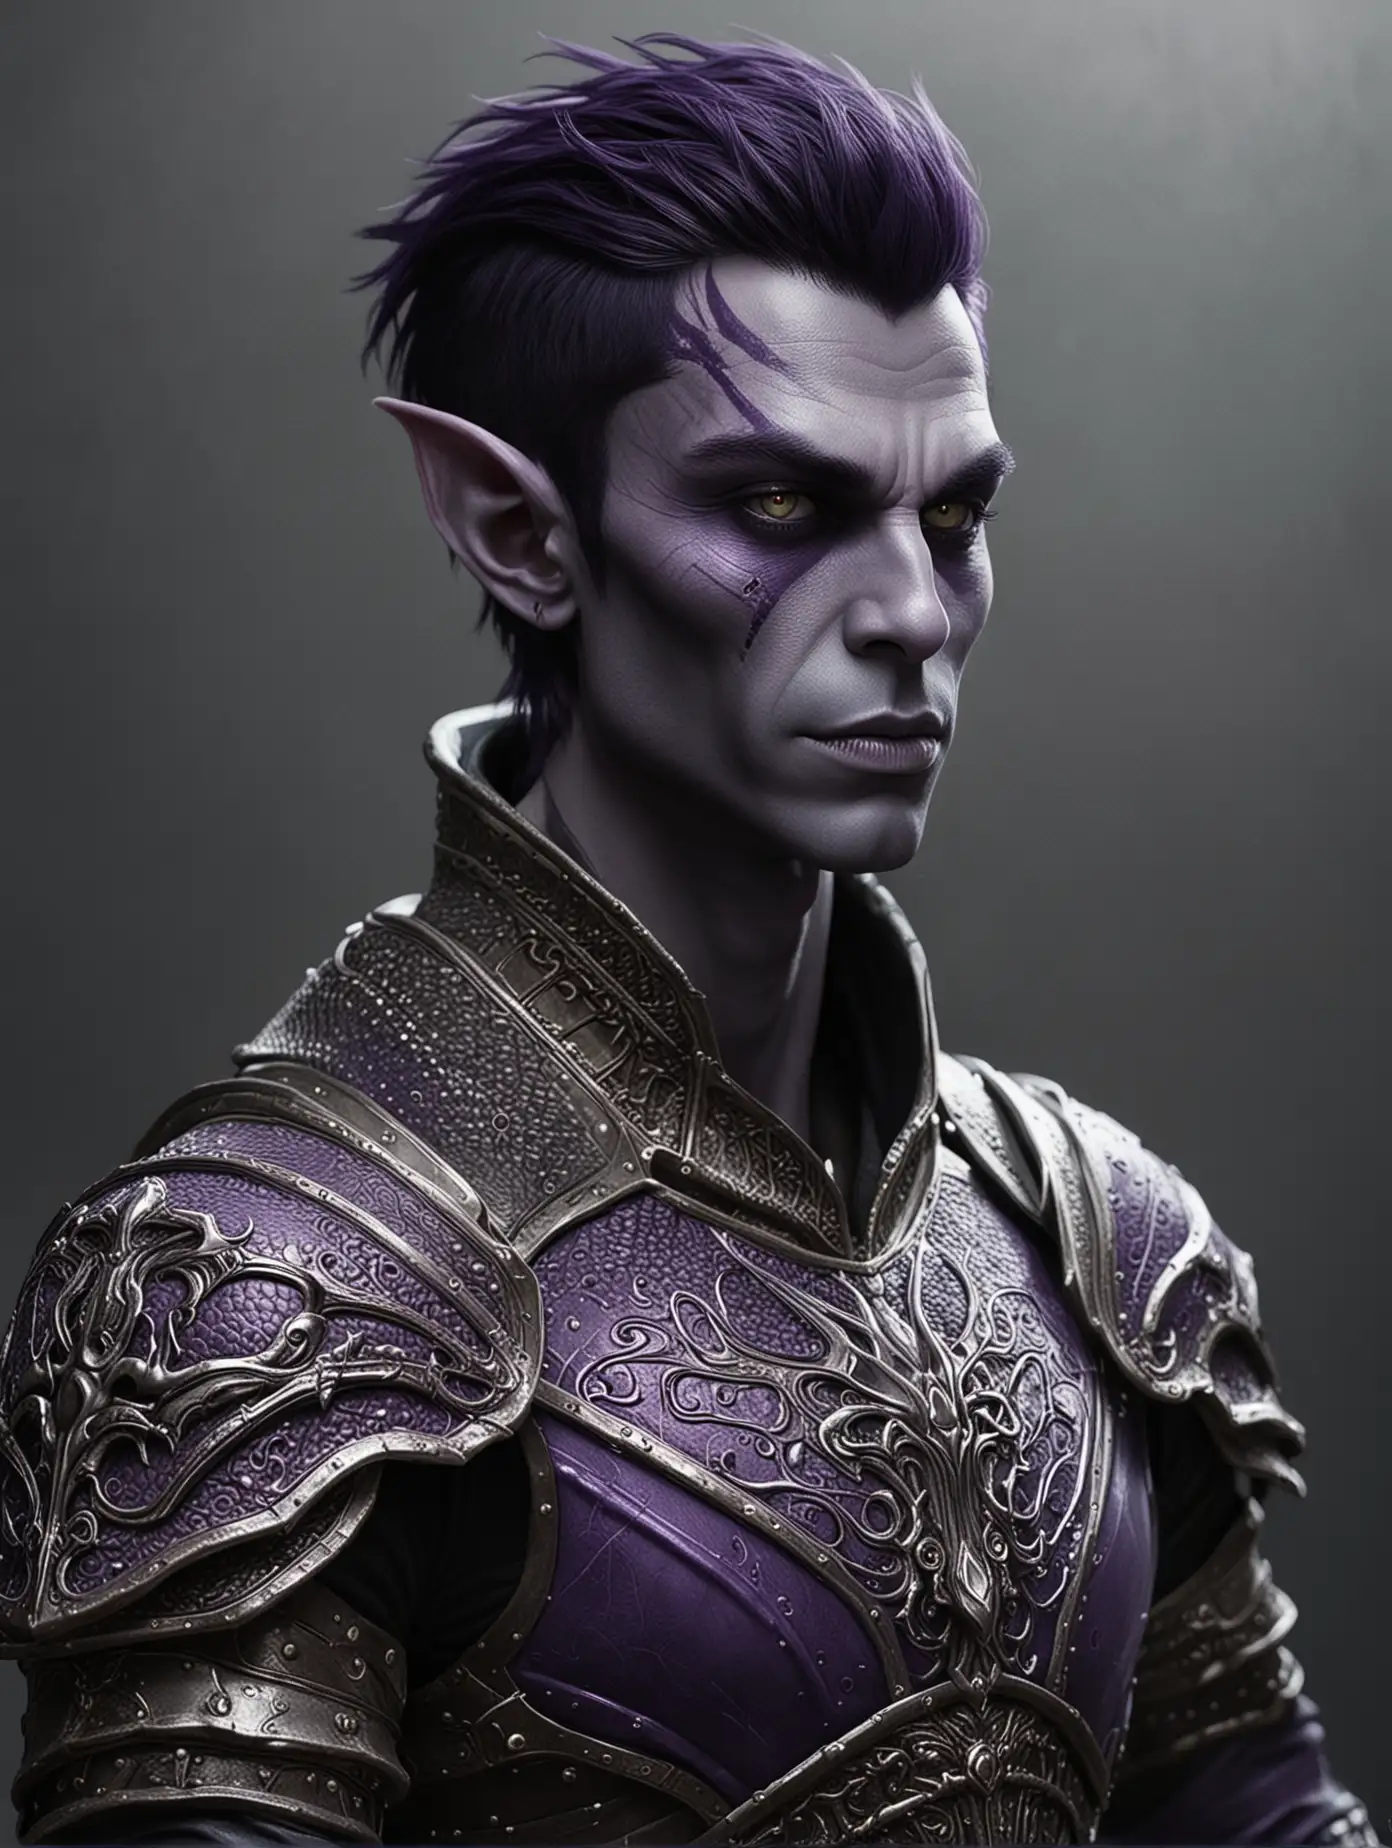 ( (alien man) | (young man) ) (medieval fantasy) ), (purple skin:1.39), [drow/goblin], (short hair;dark hair) (elaborate armour)